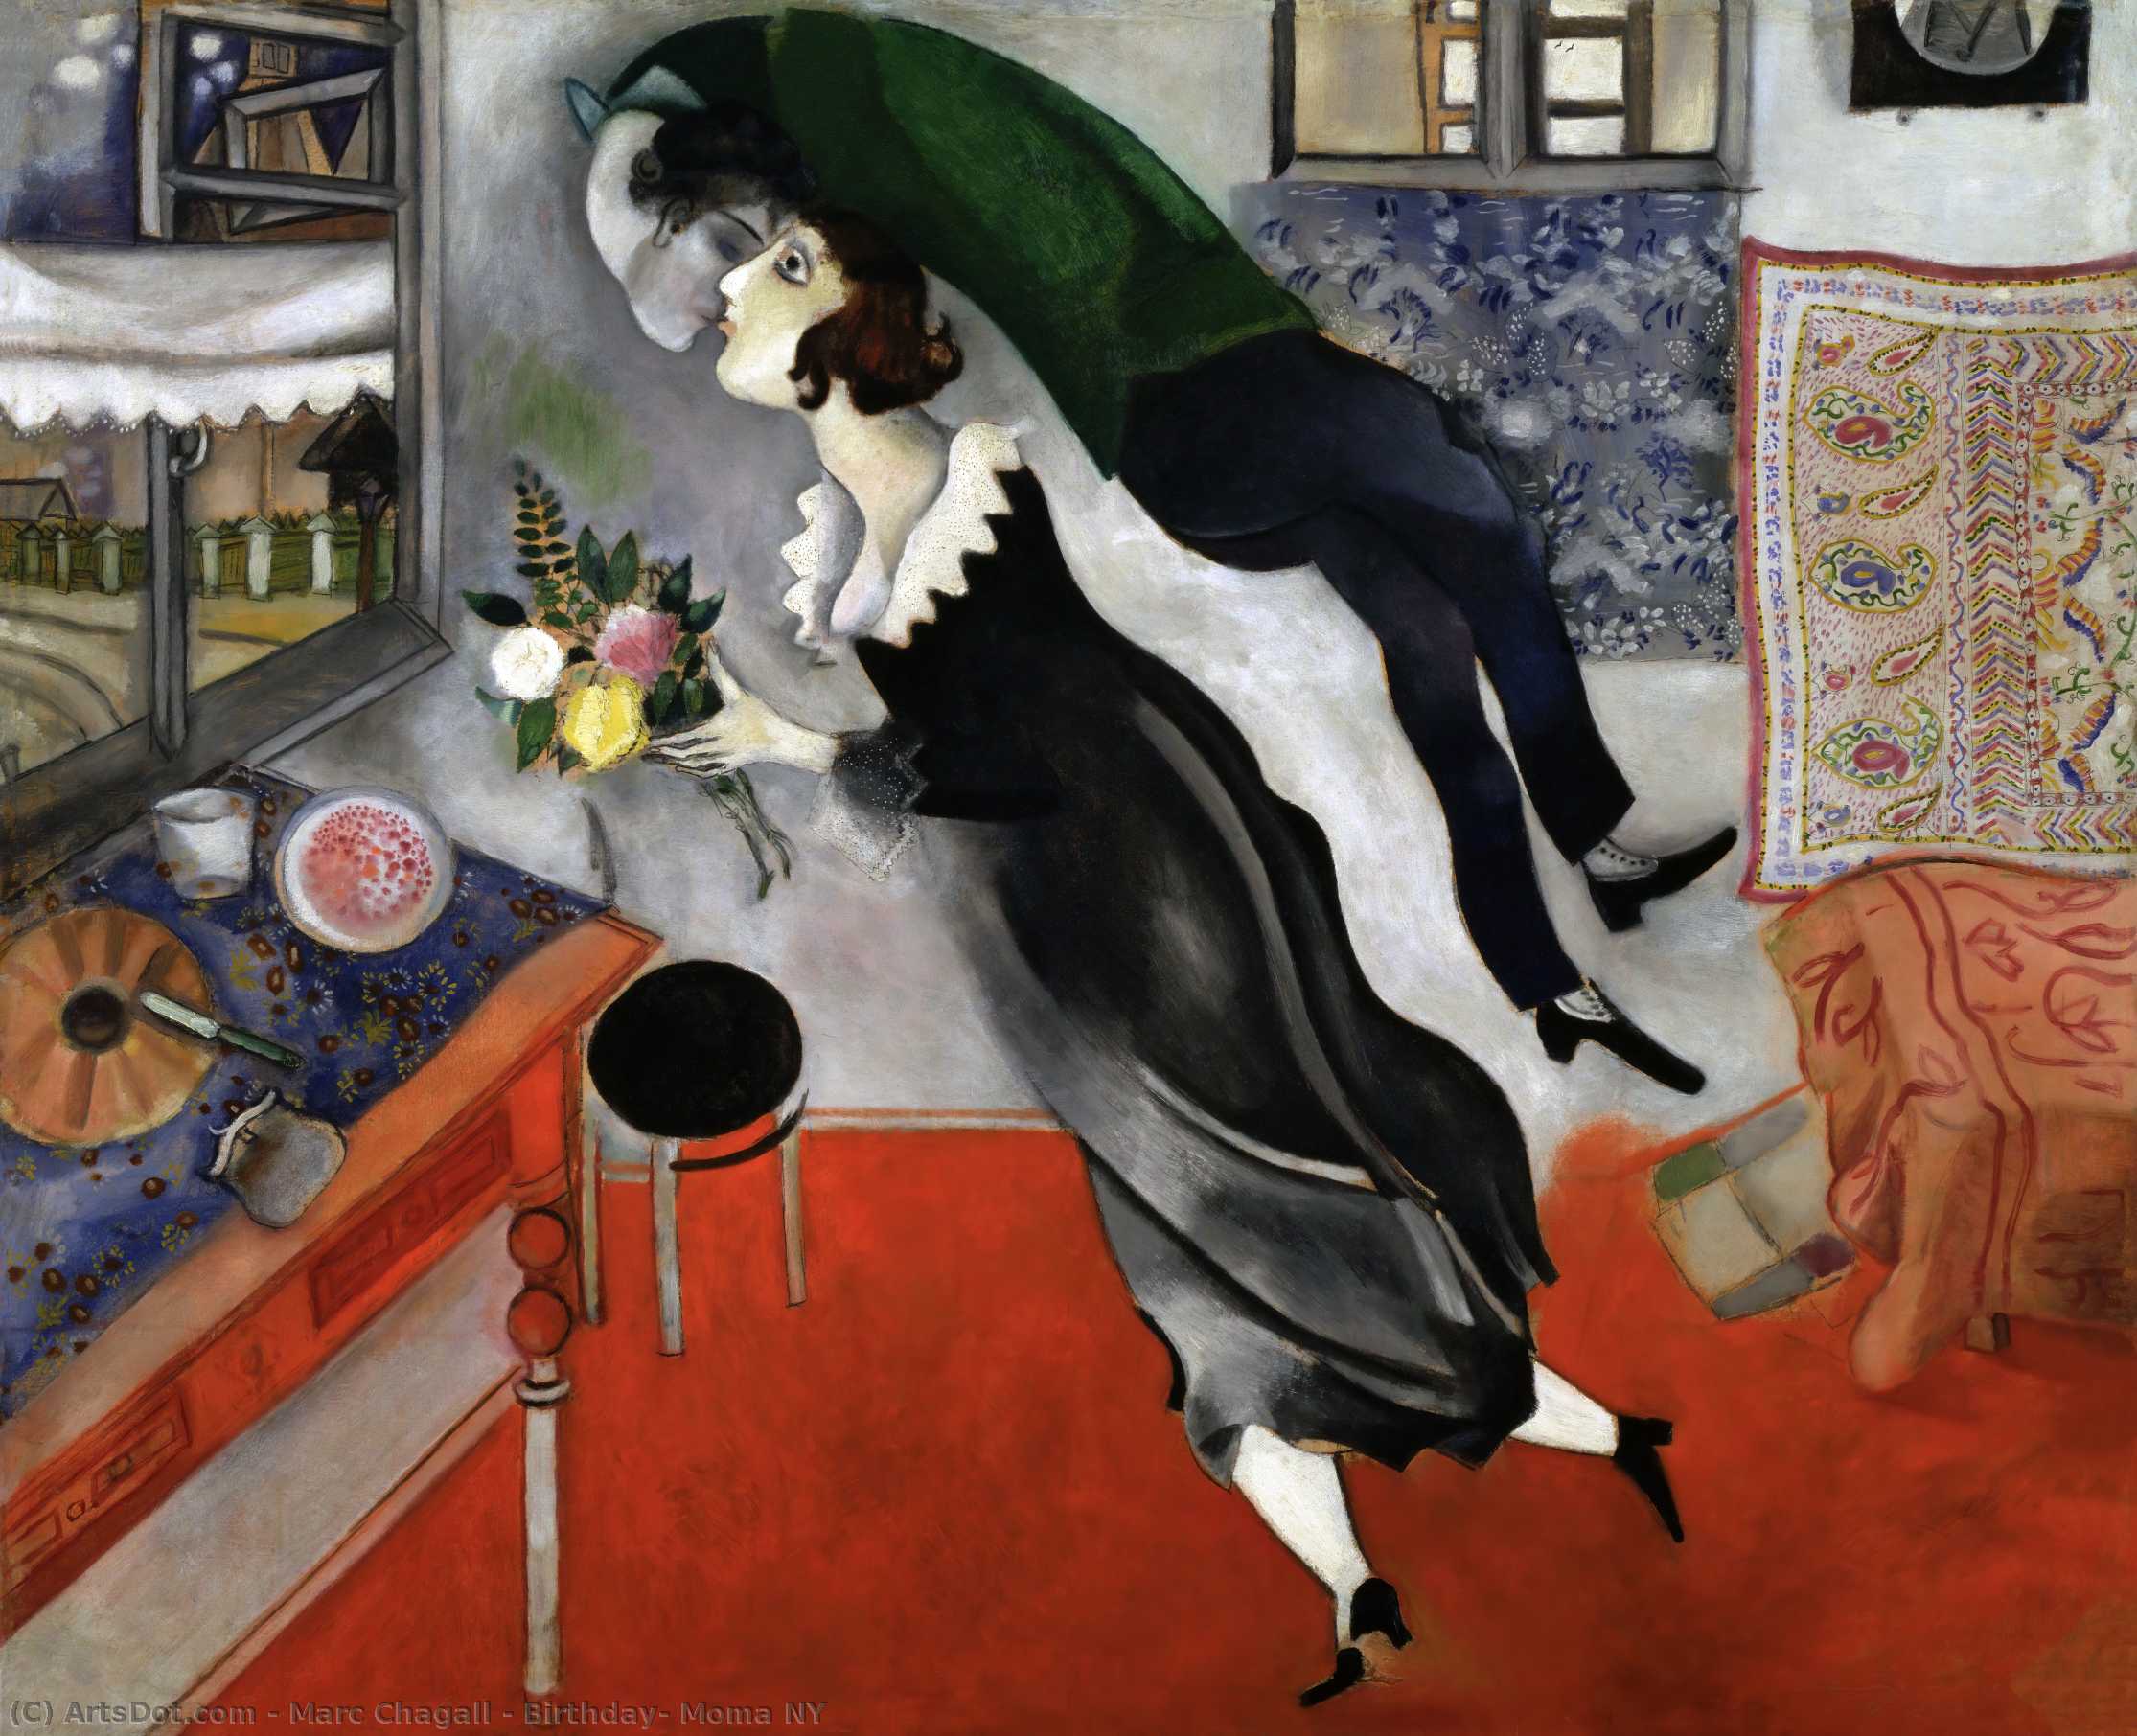 WikiOO.org - Енциклопедия за изящни изкуства - Живопис, Произведения на изкуството Marc Chagall - Birthday, Moma NY